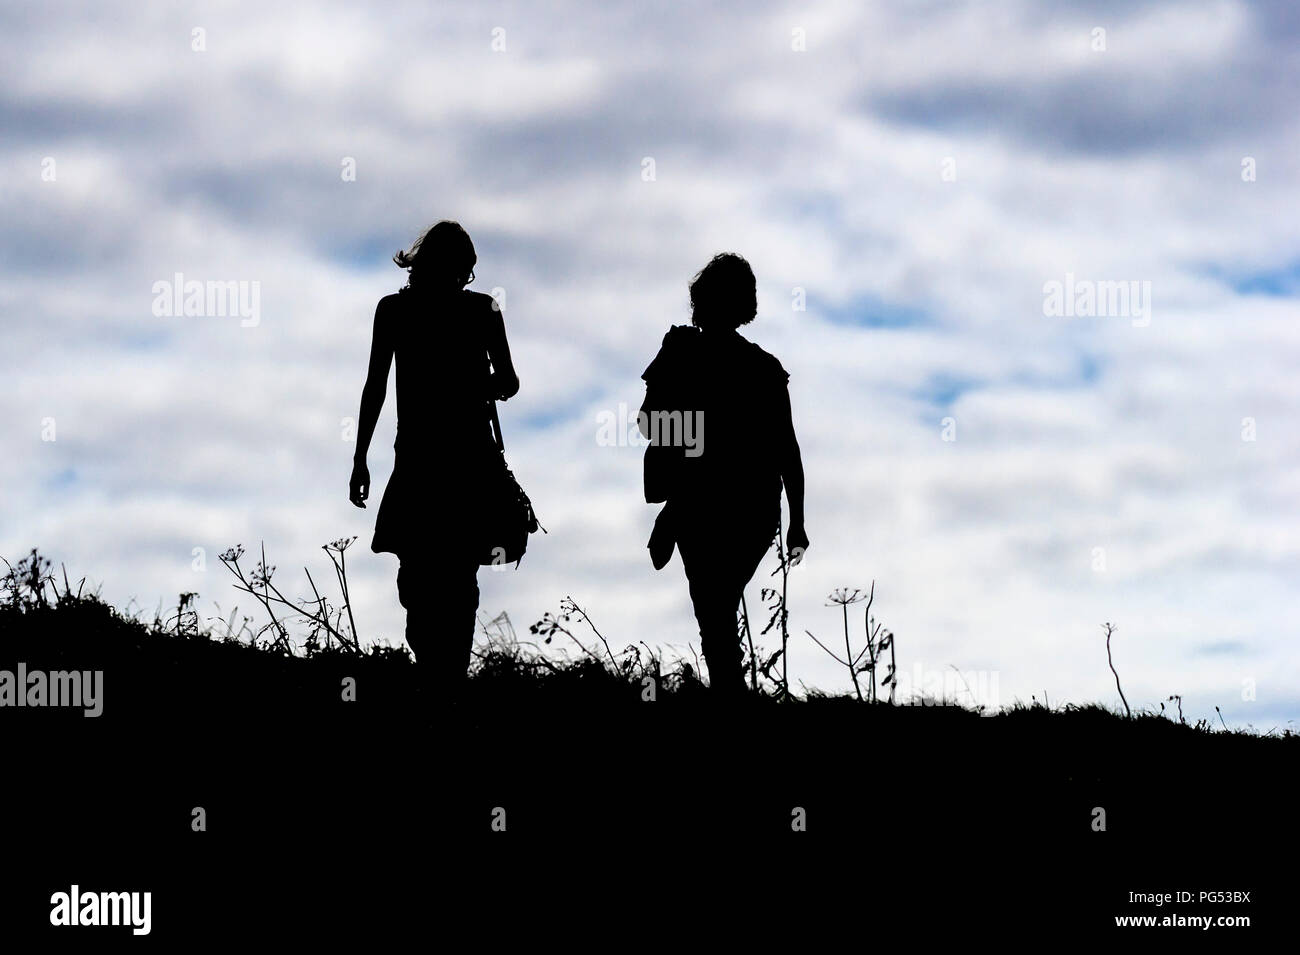 La sillhouette di due persone che camminano insieme. Foto Stock